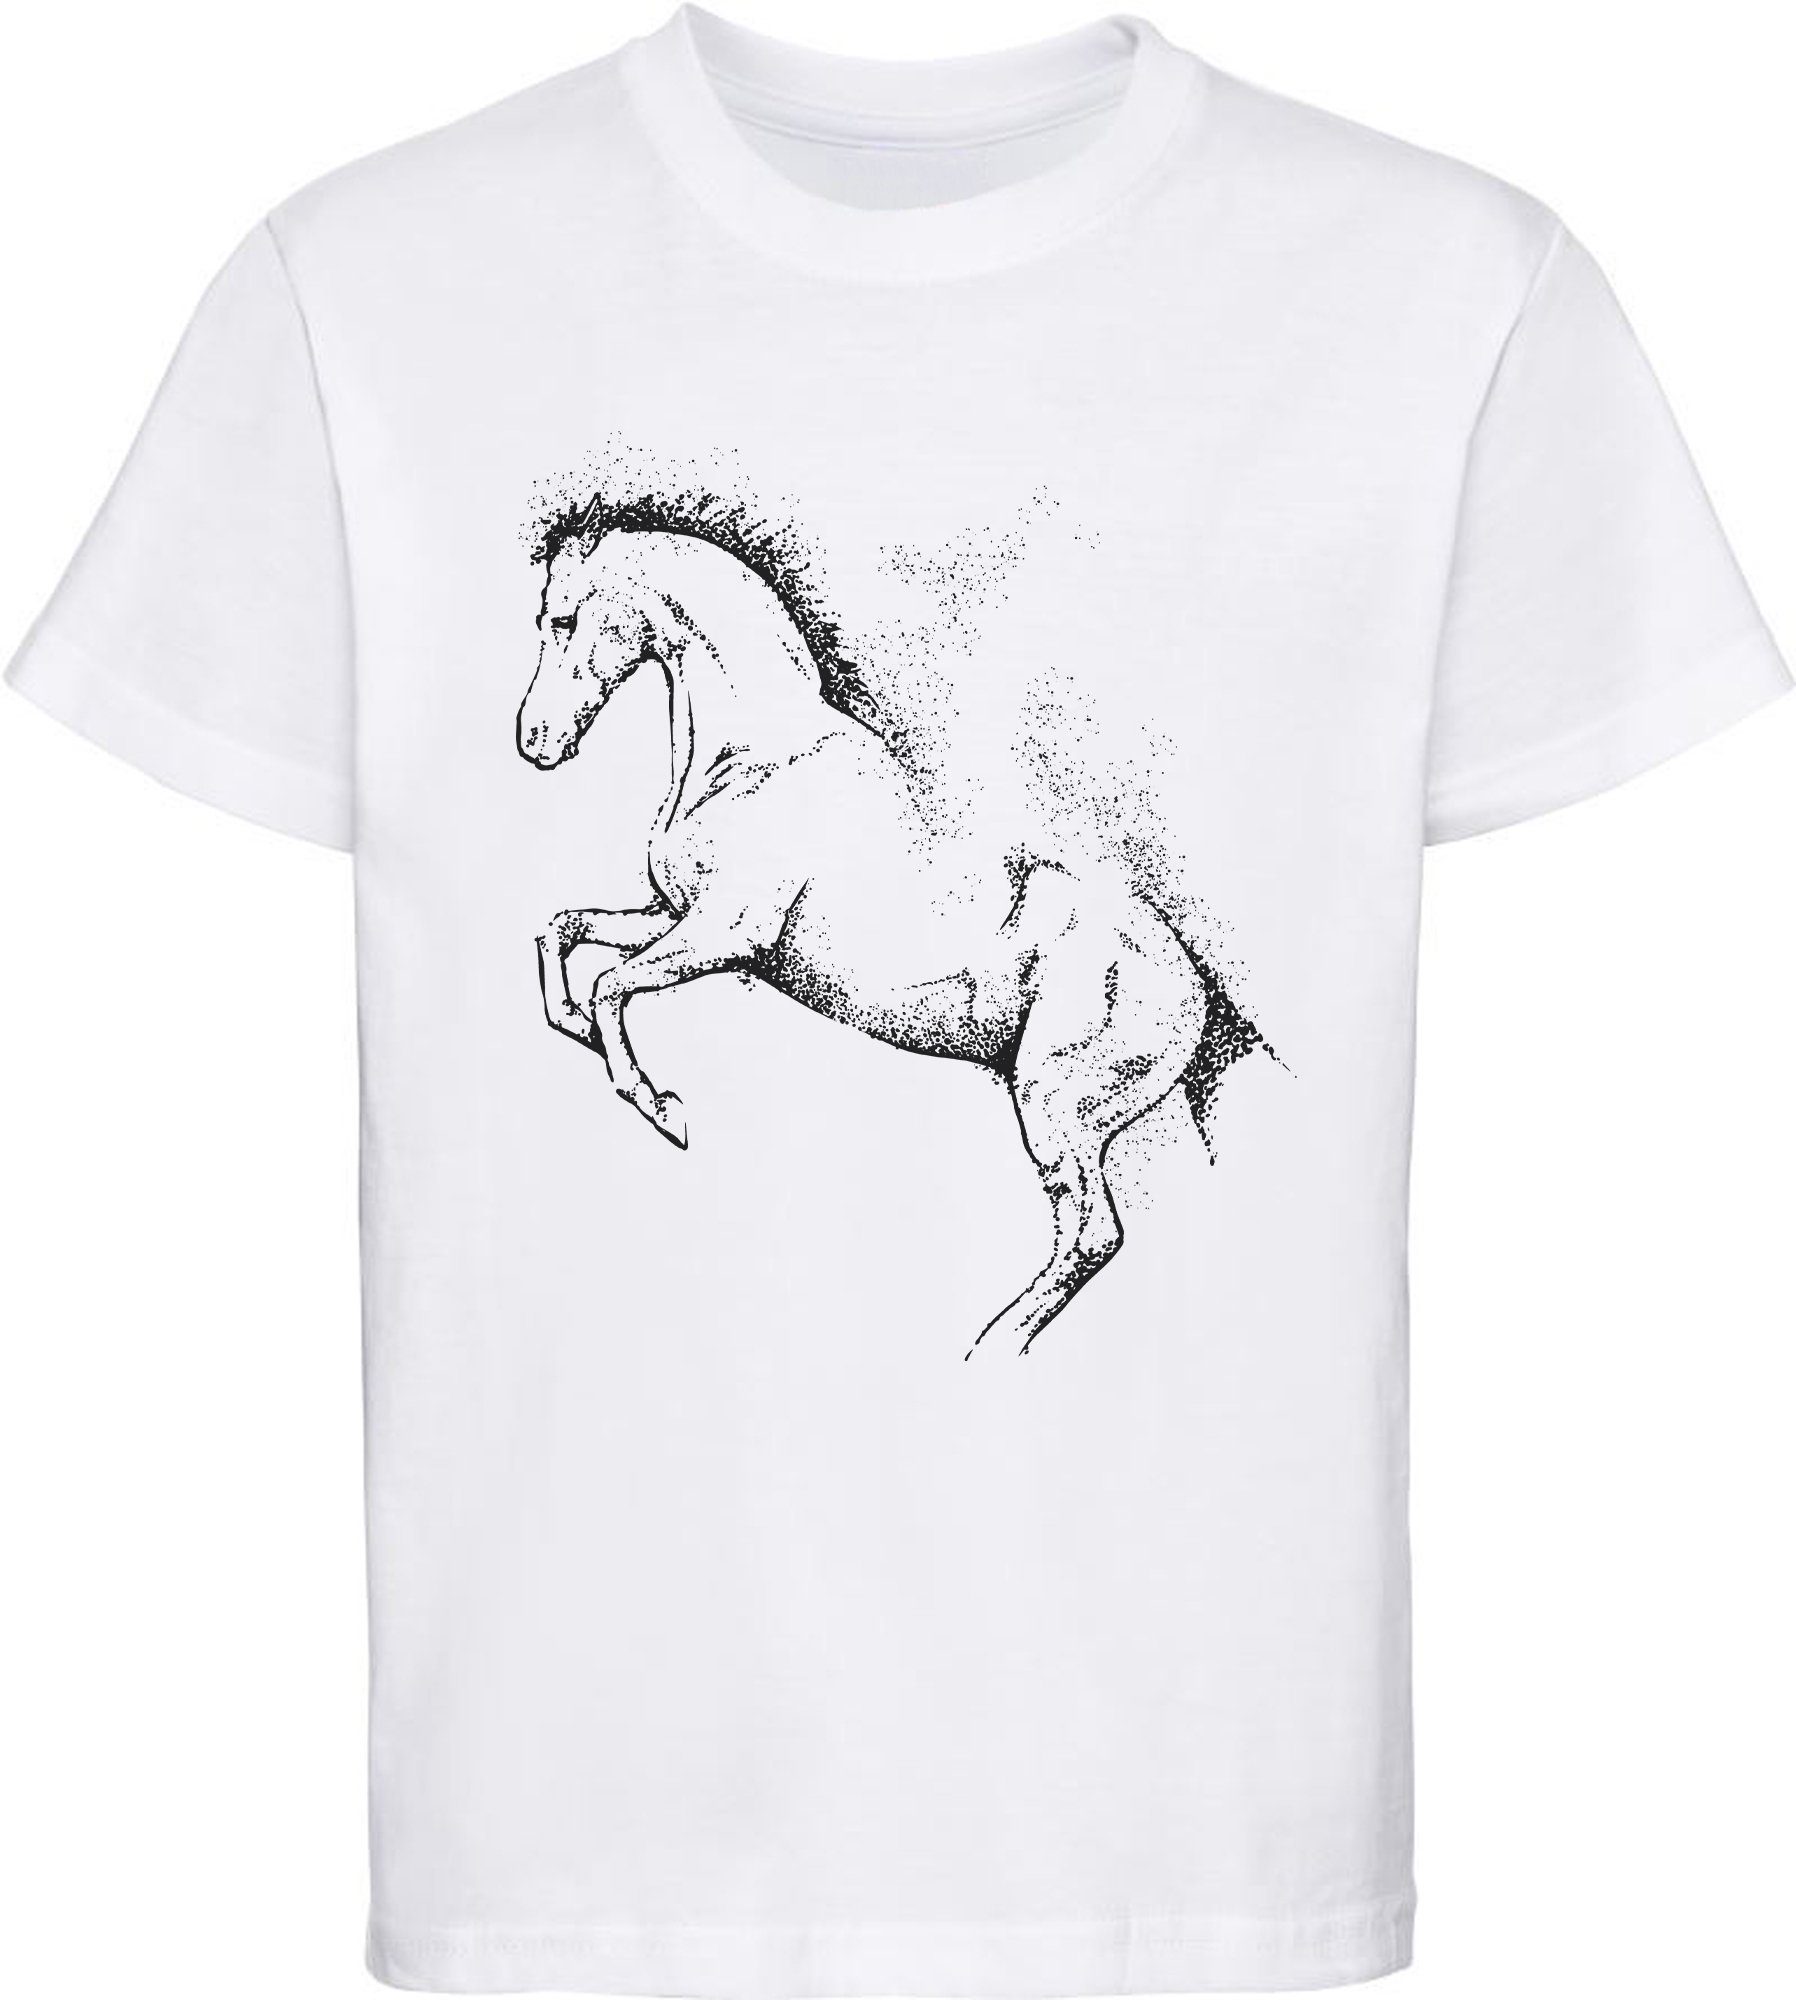 Aufdruck, Print-Shirt Mädchen weiss T-Shirt bedrucktes mit i196 Pferde MyDesign24 Silhouette Baumwollshirt Kinder Gepunktete -